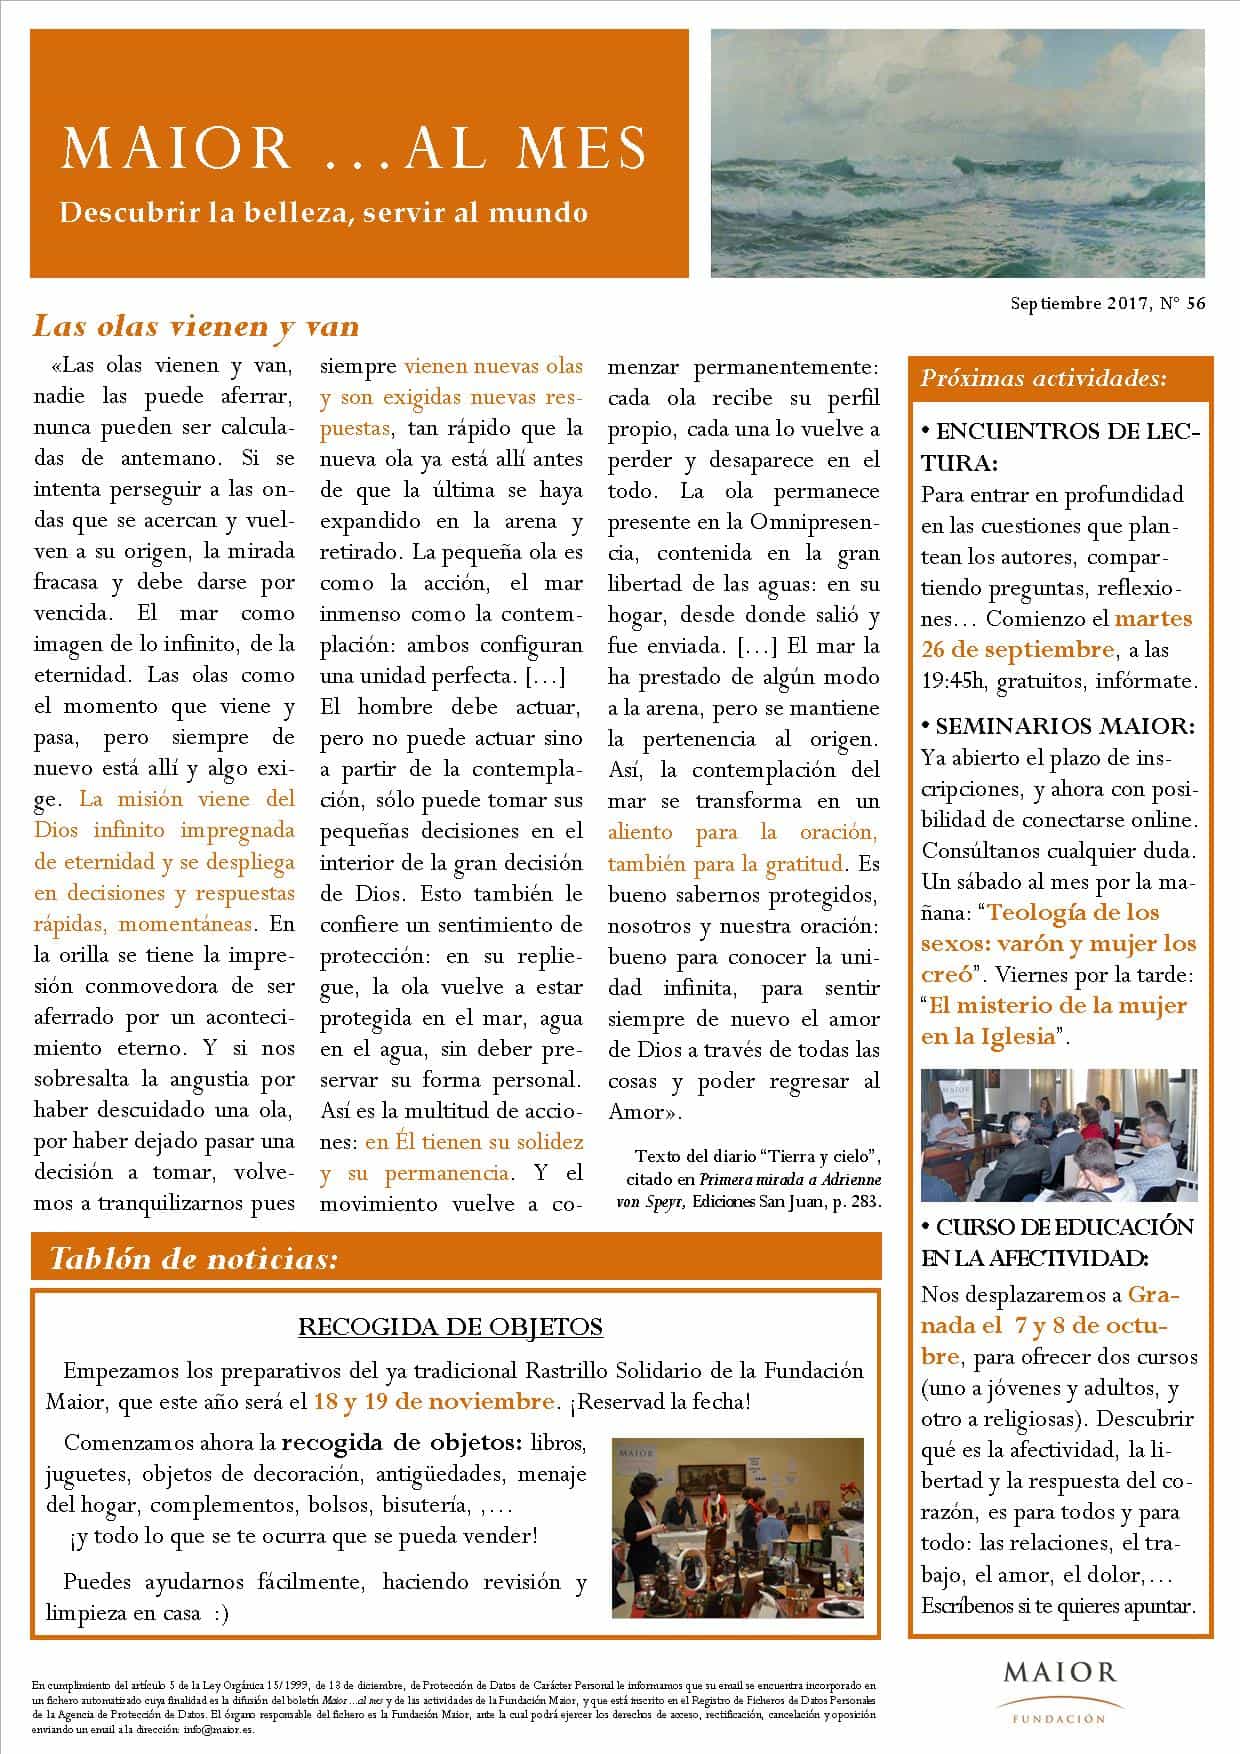 Boletín mensual de noticias y actividades de la Fundación Maior. Edición de septiembre 2017